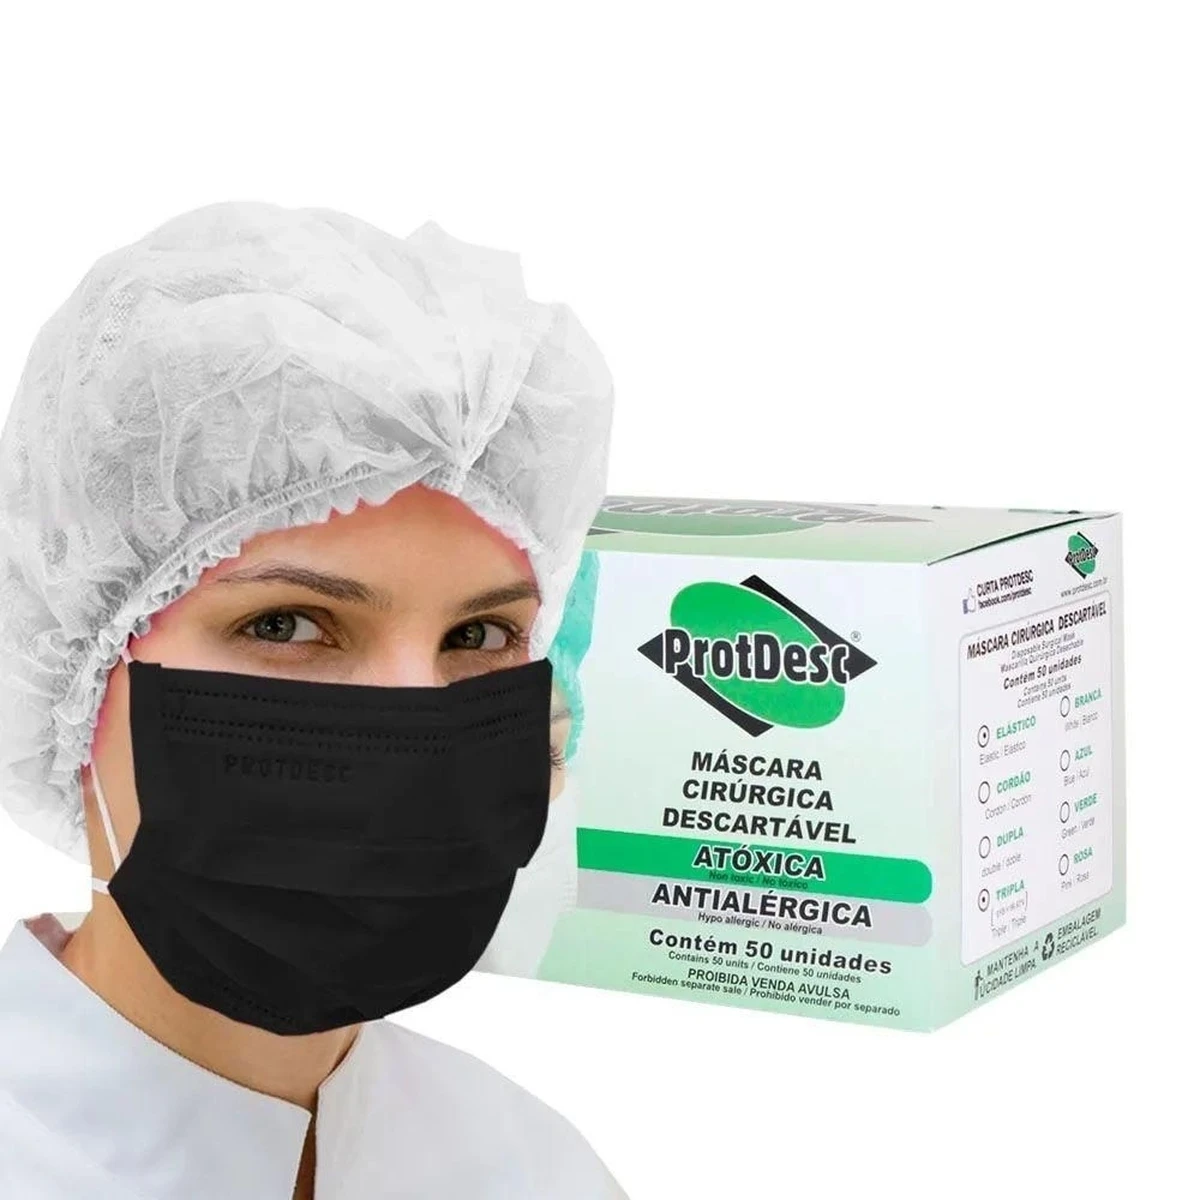 Foto do produto Máscara Cirúrgica Preta Descartável com Elástico caixa com 50 unid Protdesc